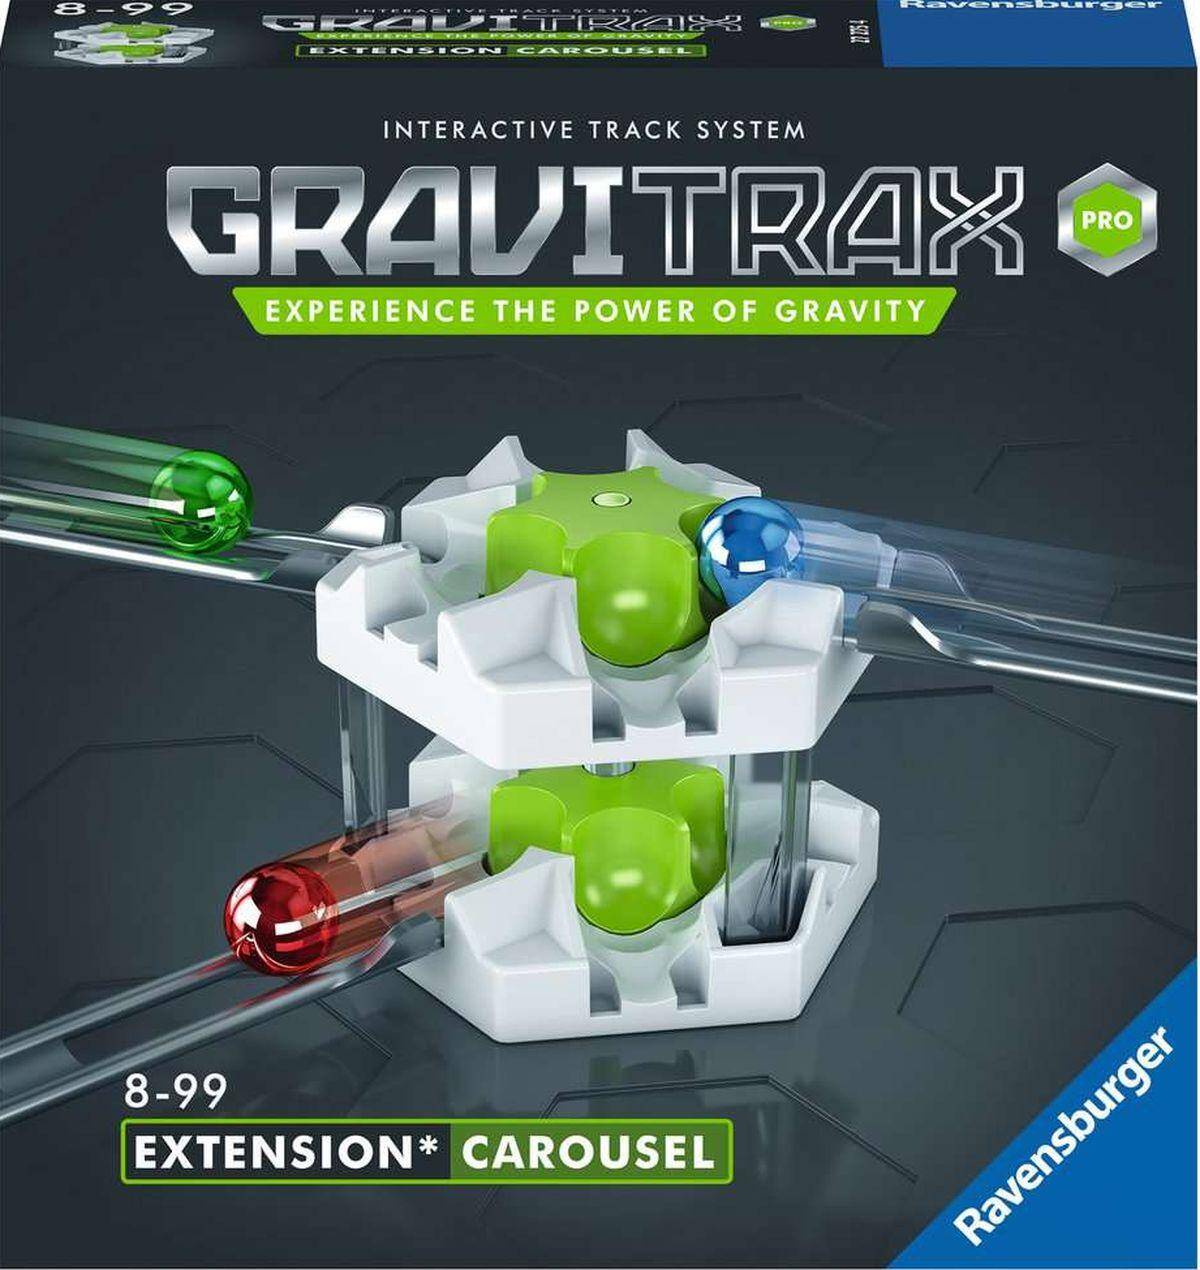 Gravitrax PRO Extension Carousel  zestaw uzupełniający  karuzela 27275